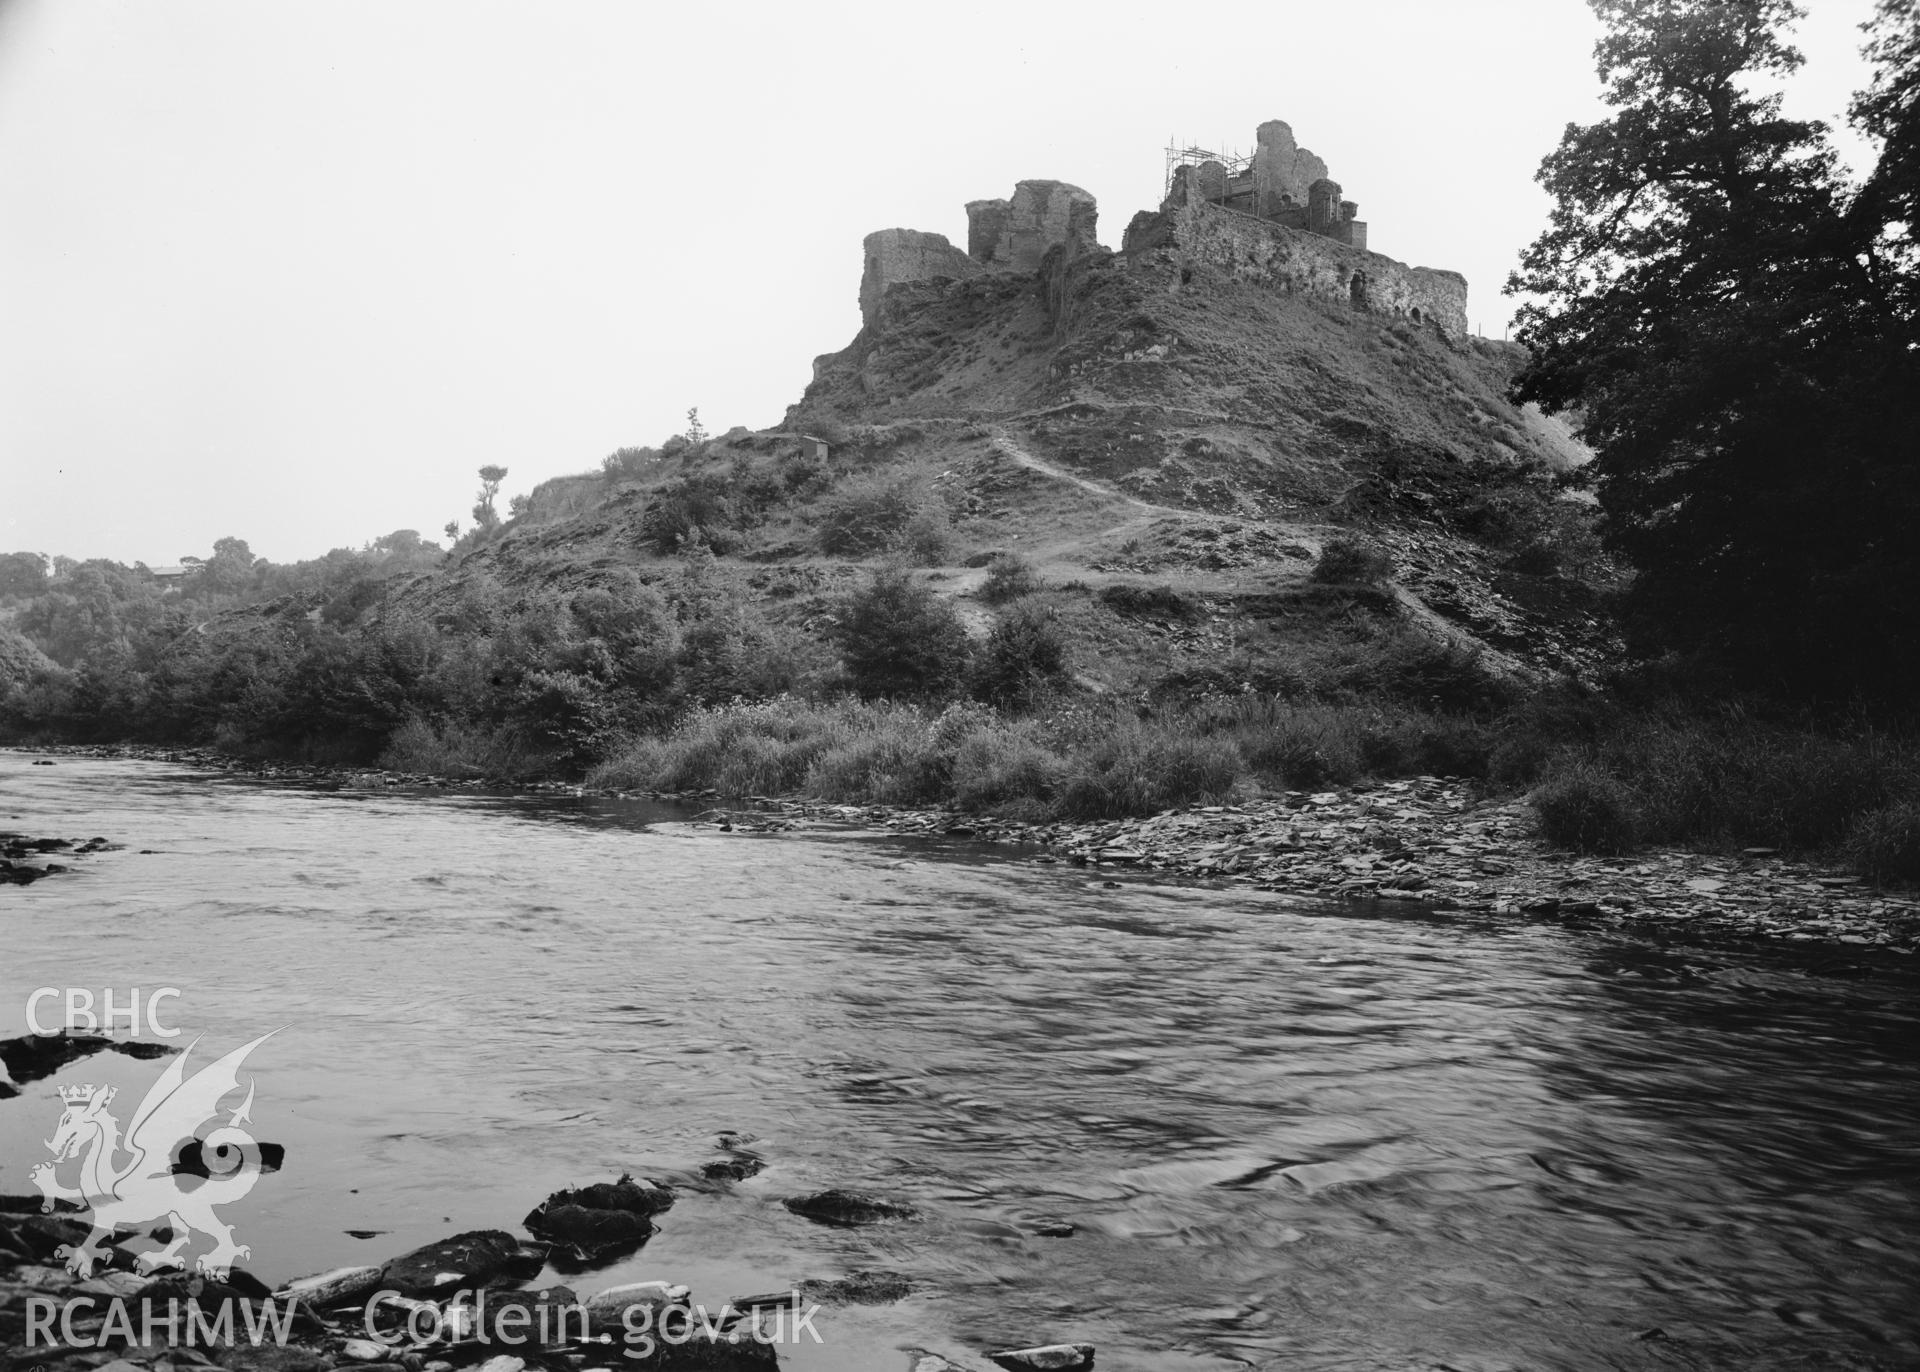 D.O.E photograph of Cilgerran Castle.